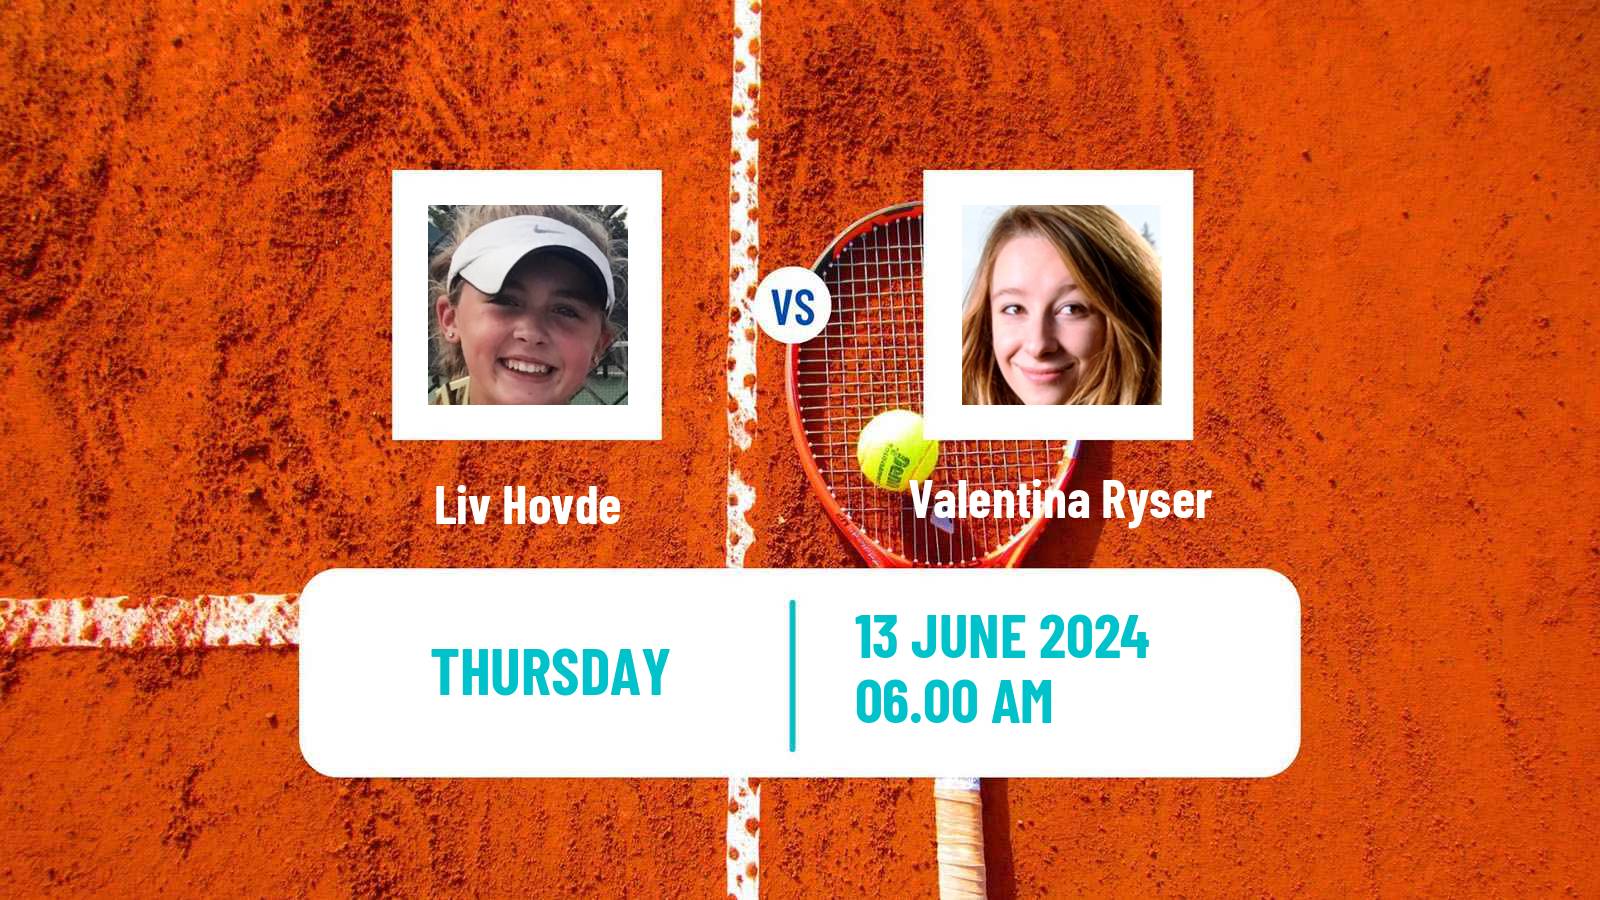 Tennis ITF W75 Guimaraes Women Liv Hovde - Valentina Ryser